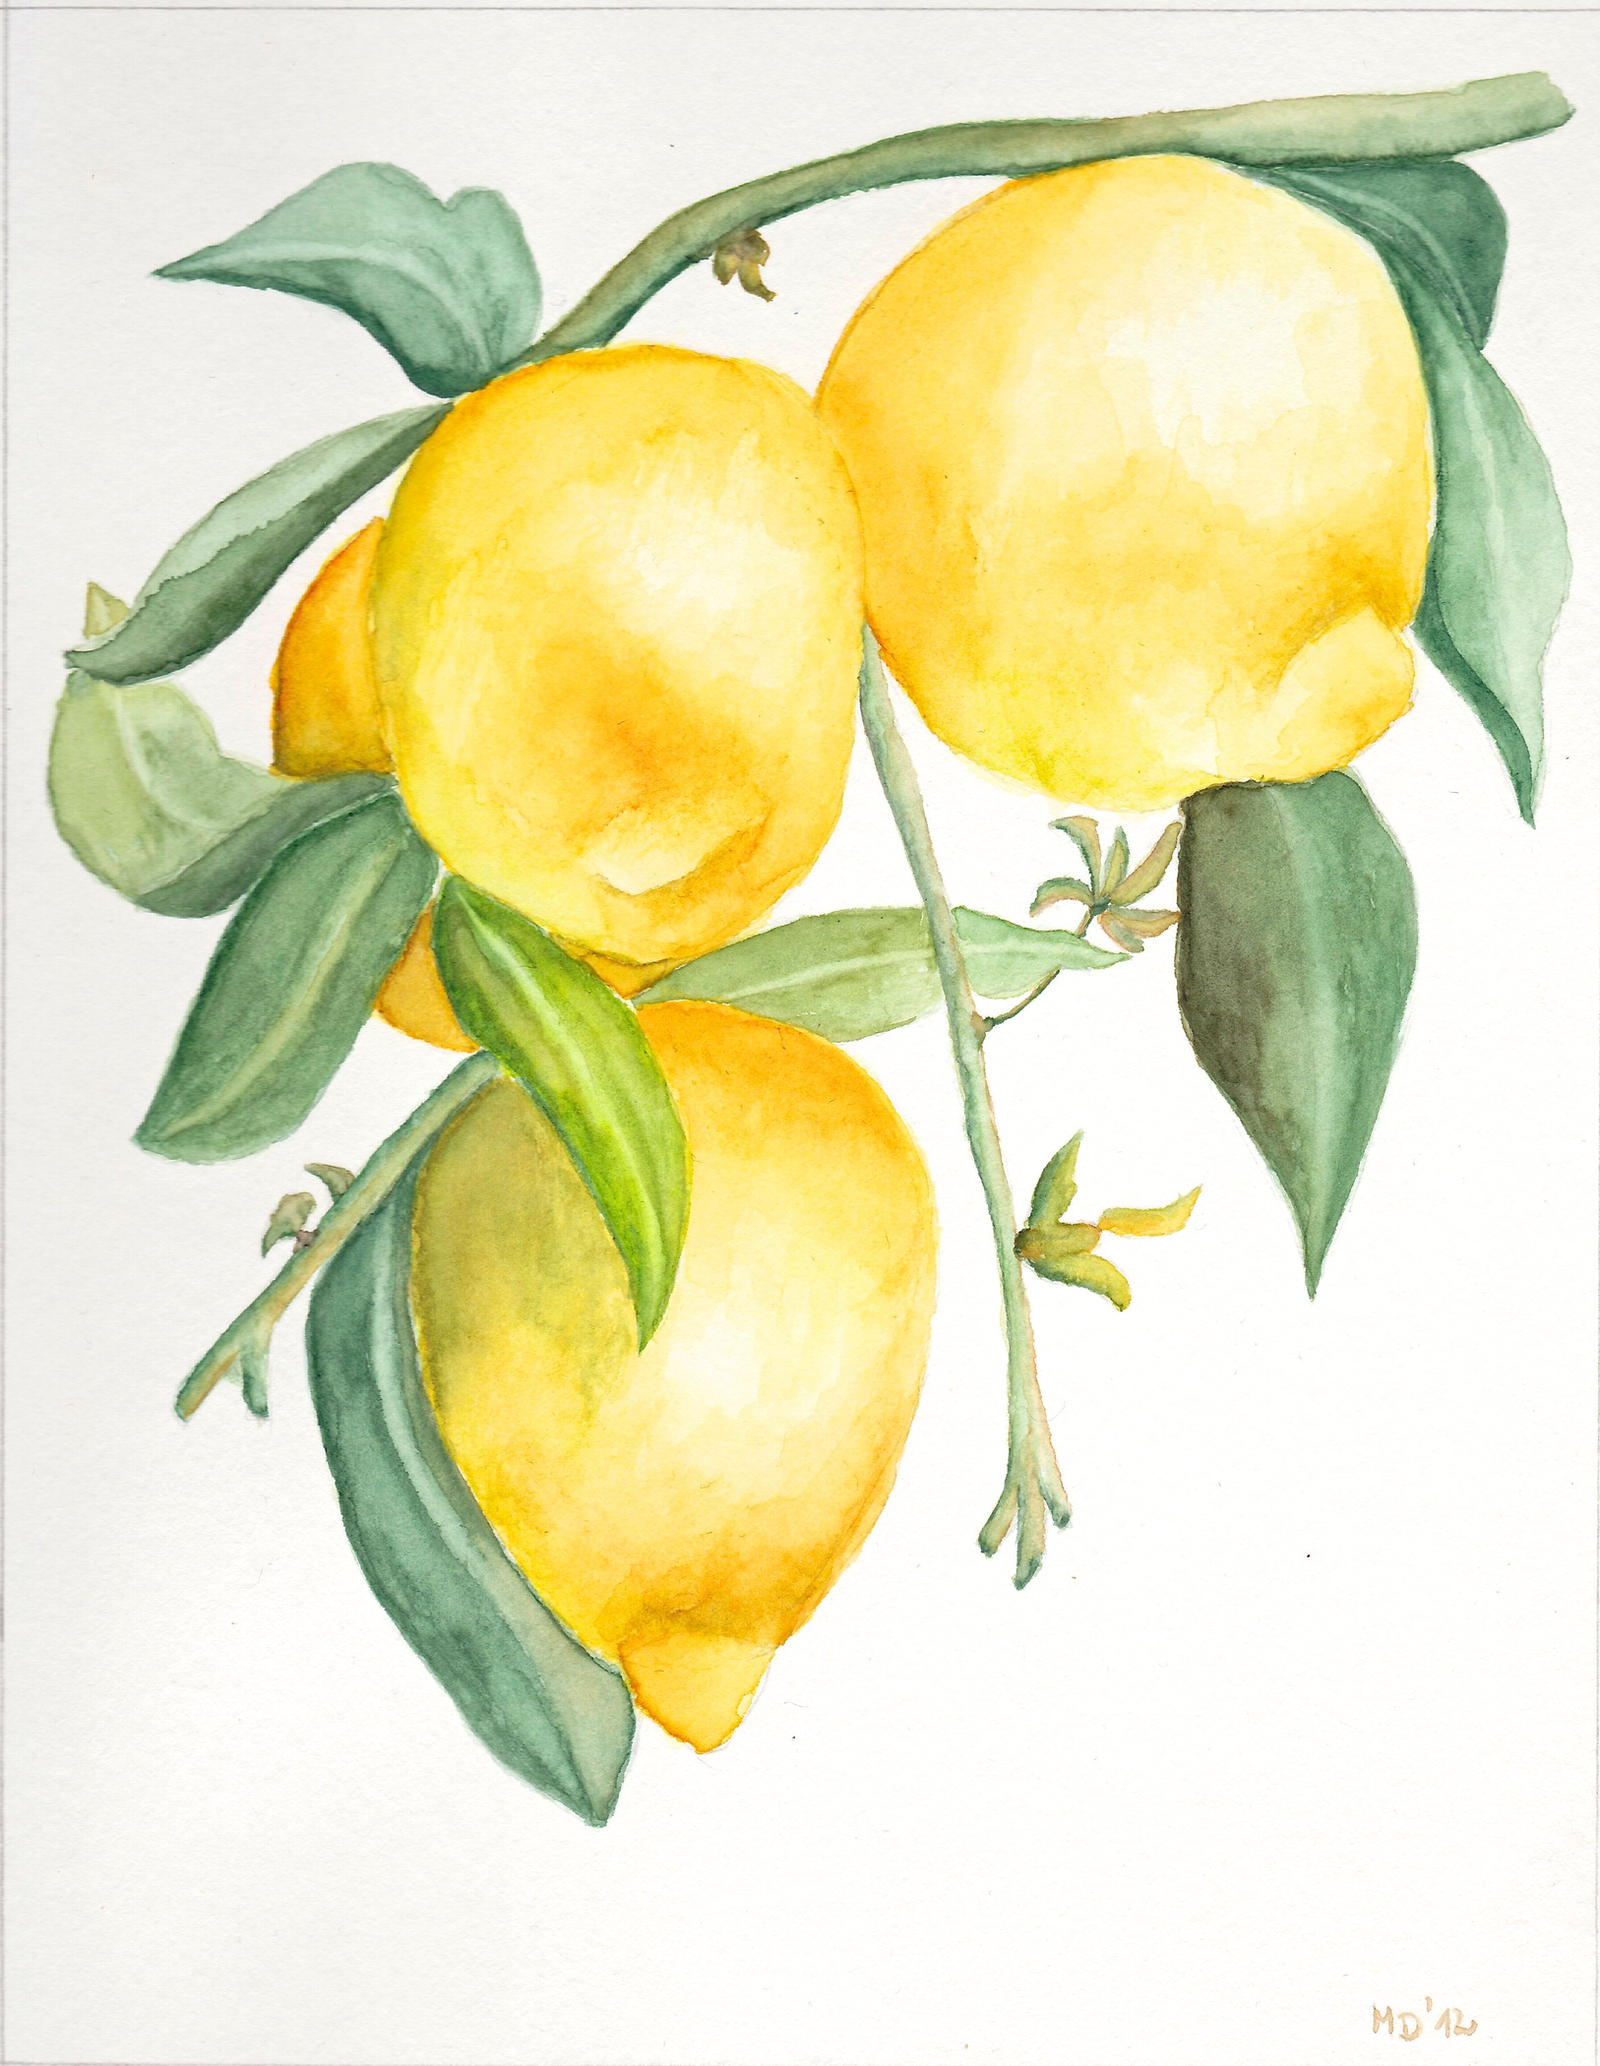 Citrus x limon by migas90 on DeviantArt